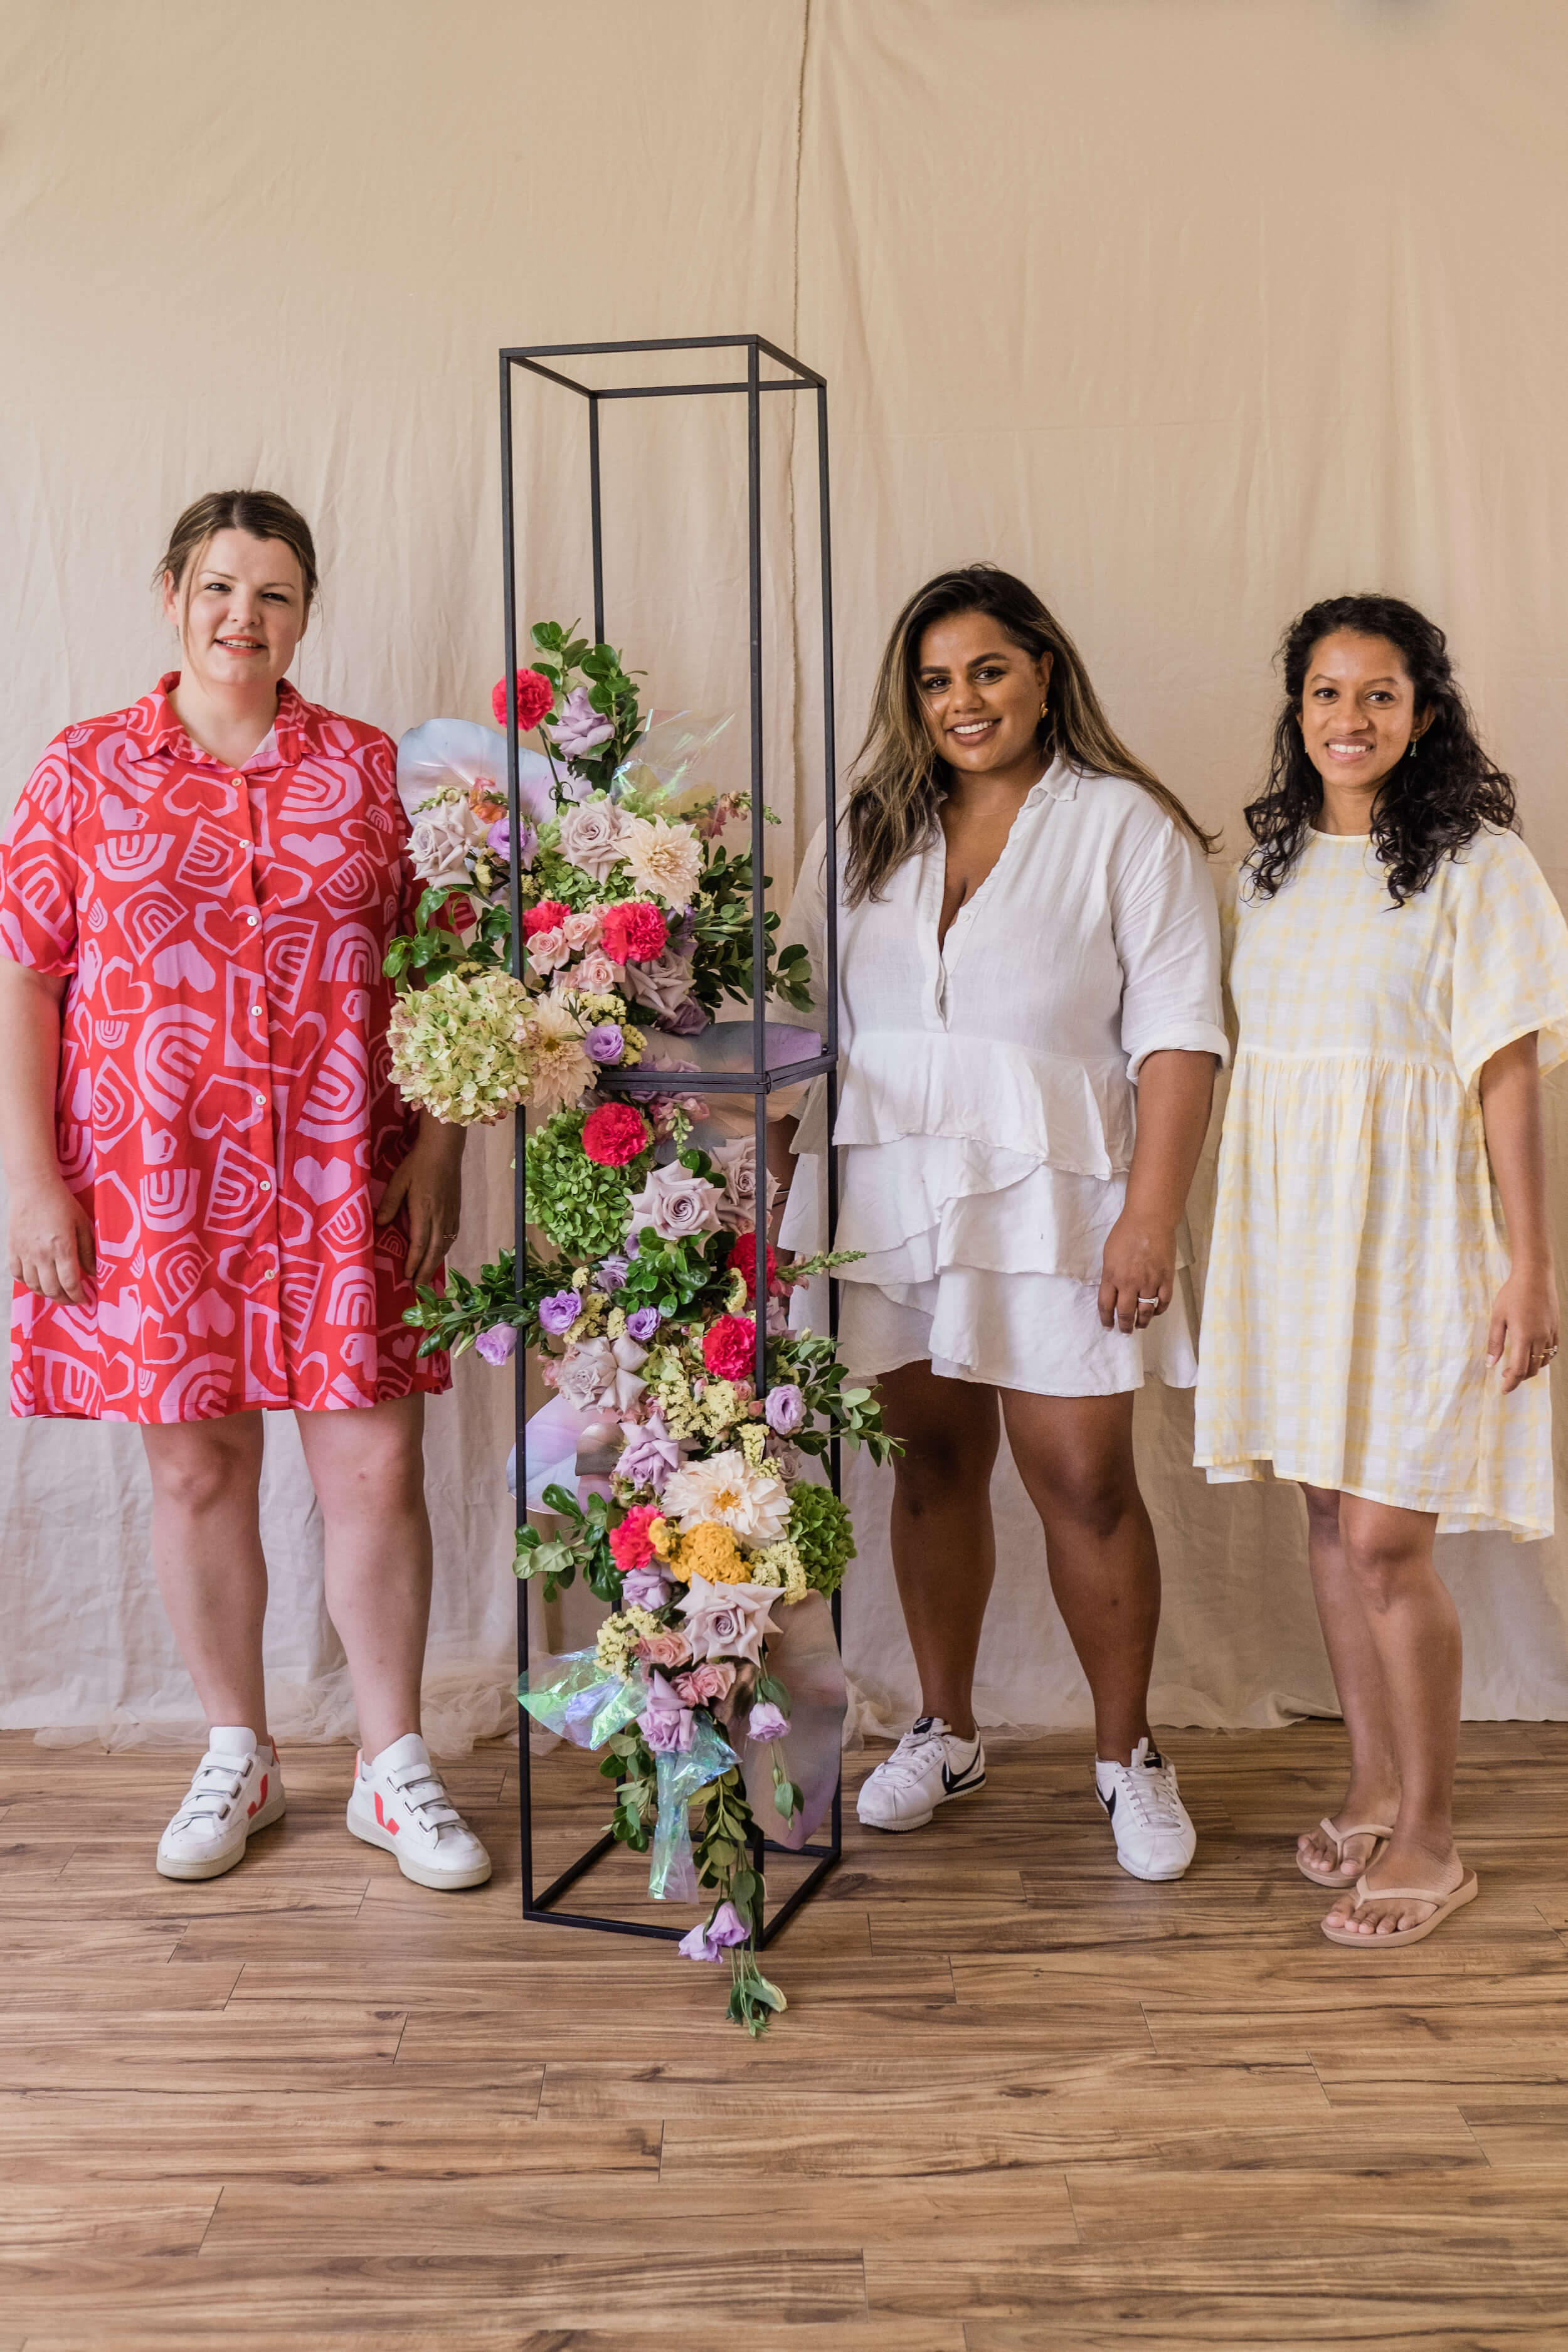 flourish workshop sydney floristry students